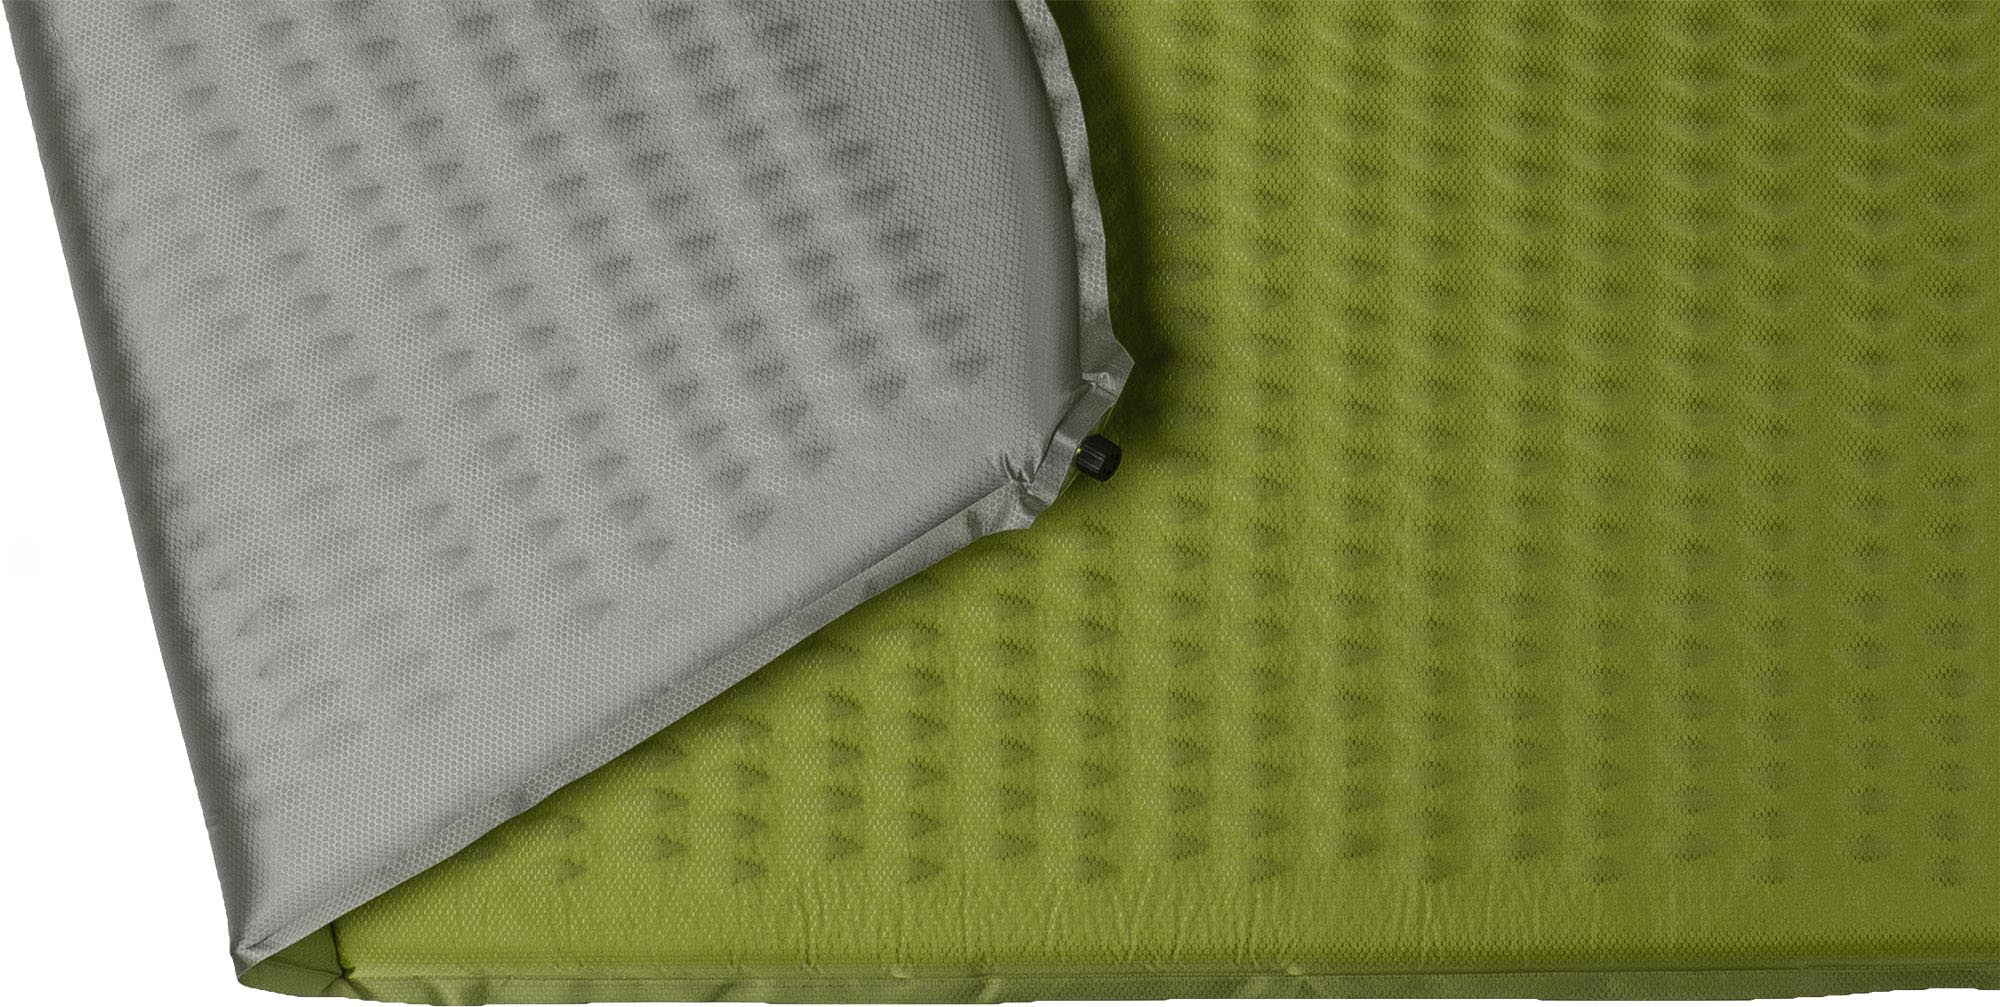 Self-inflating sleeping mat